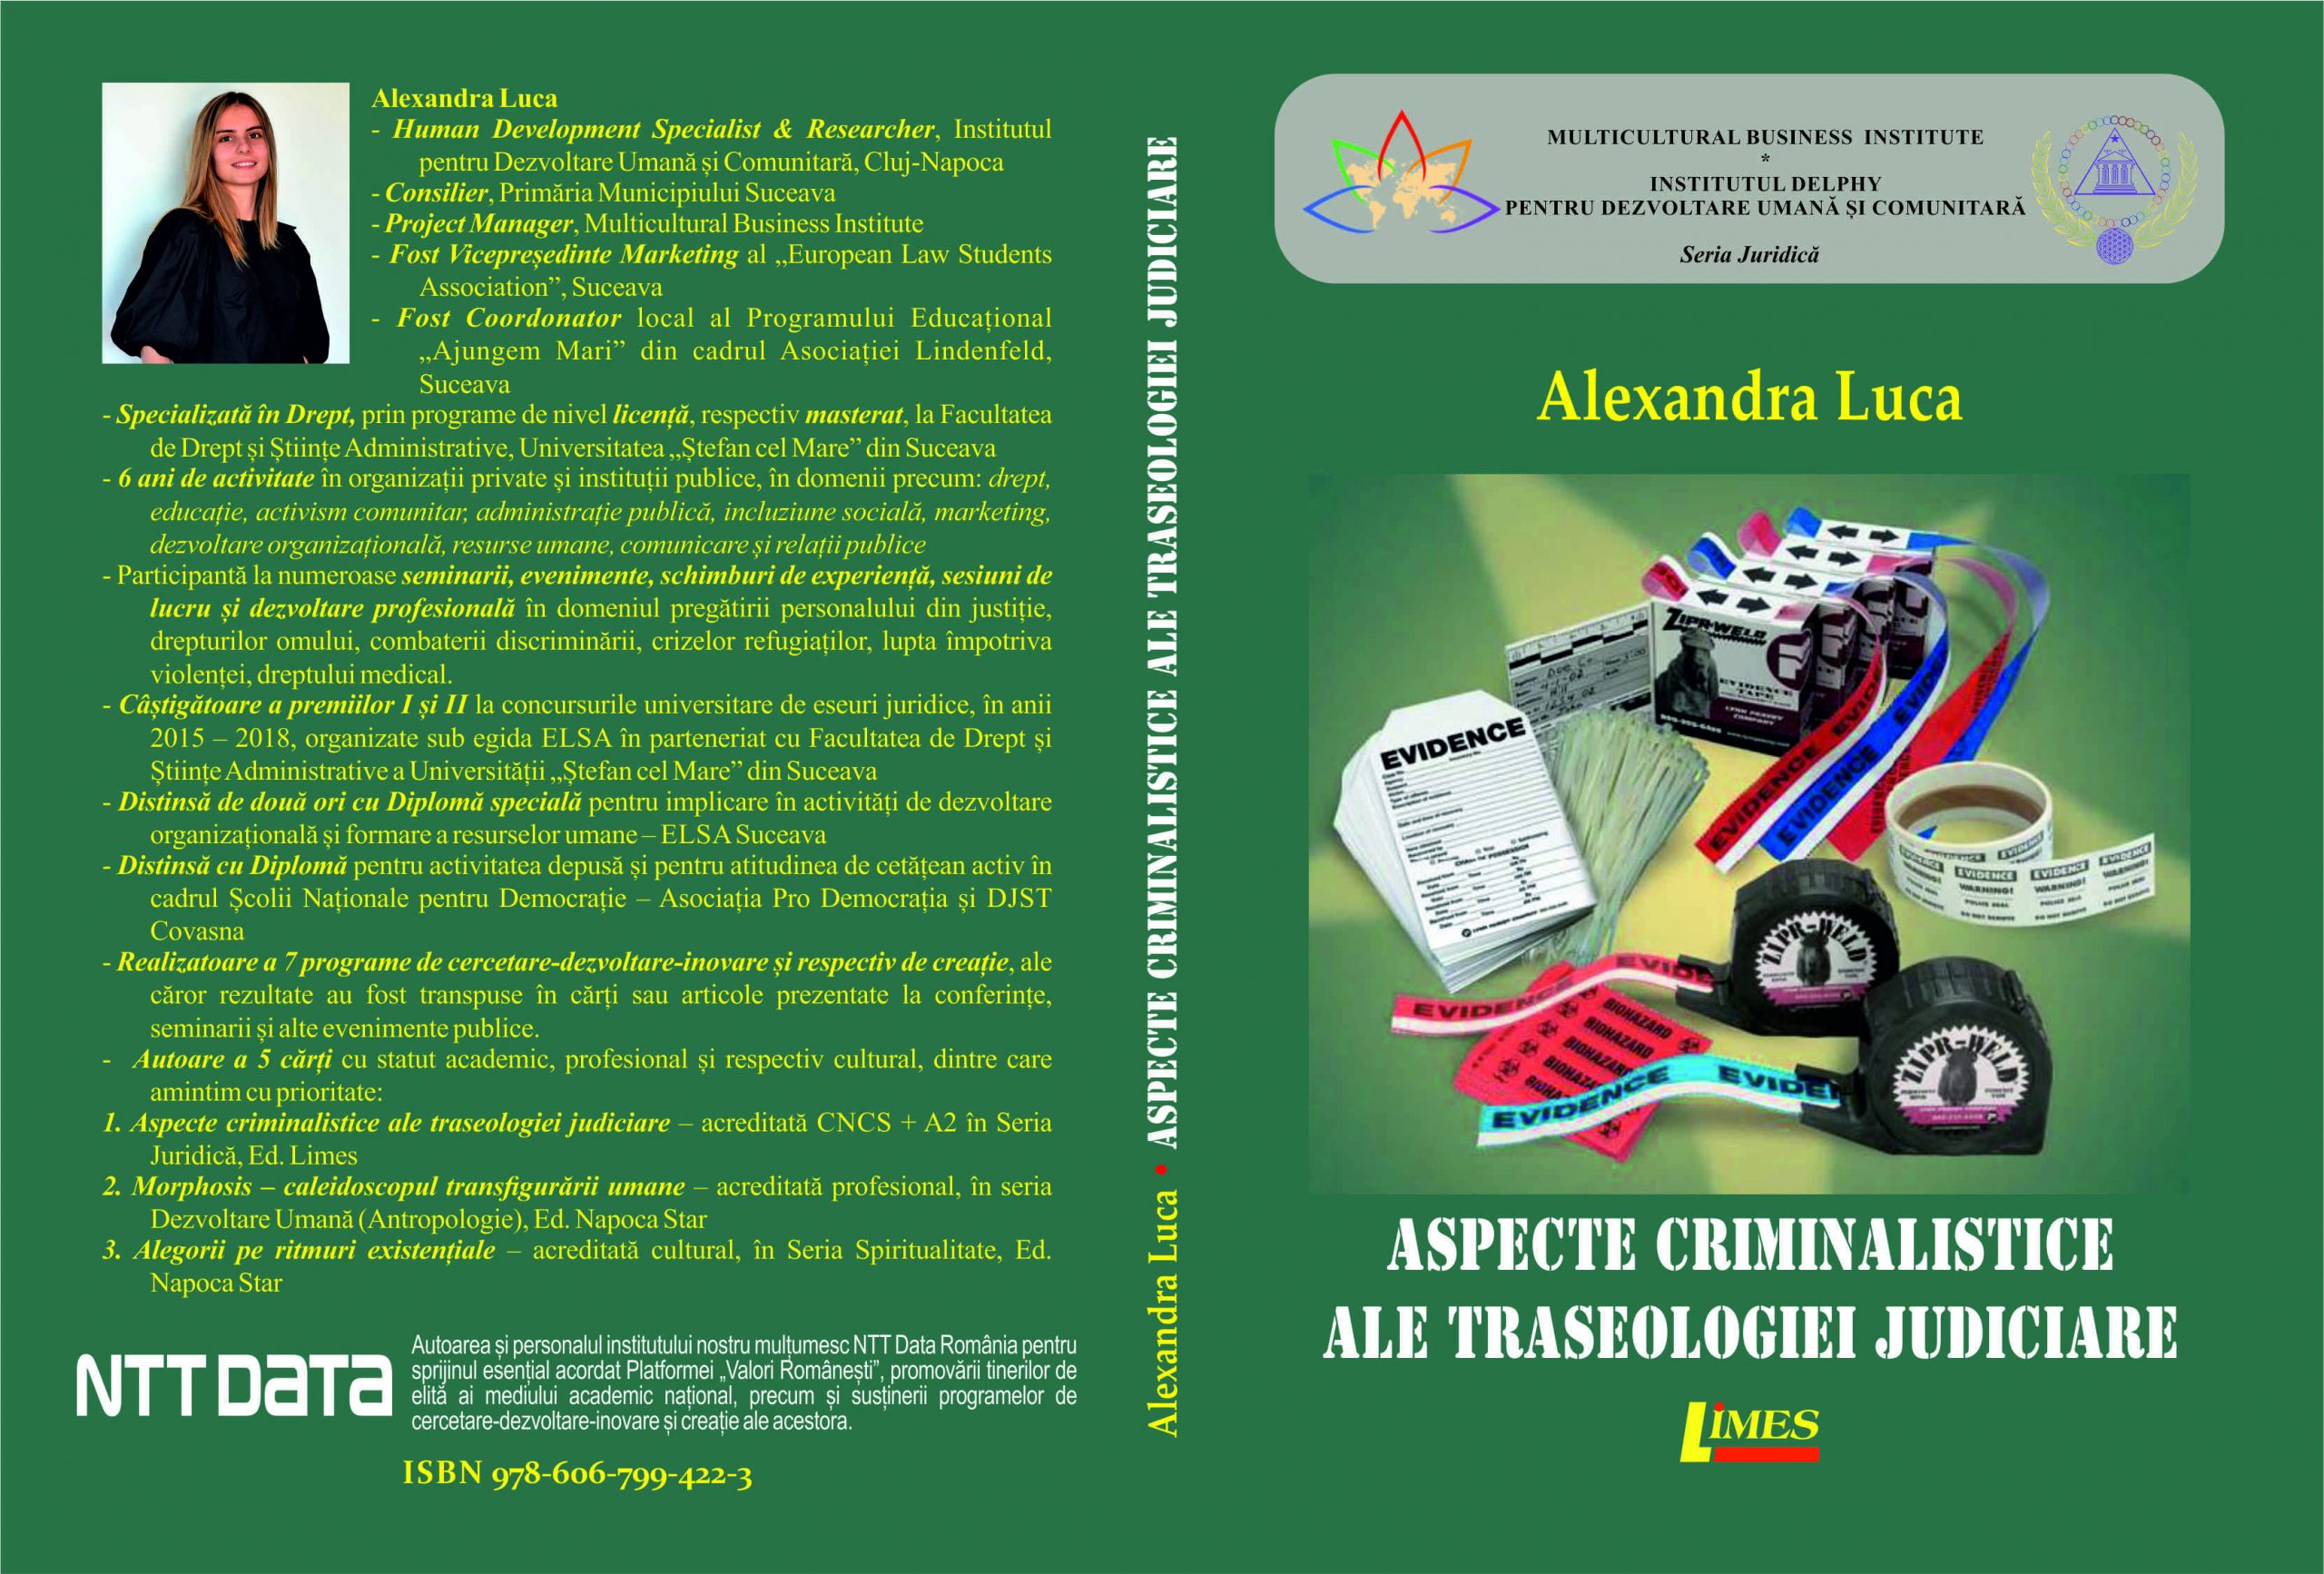 Aspecte criminalistice ale traseologiei judiciare - Alexandra Luca-logo NTT DATA